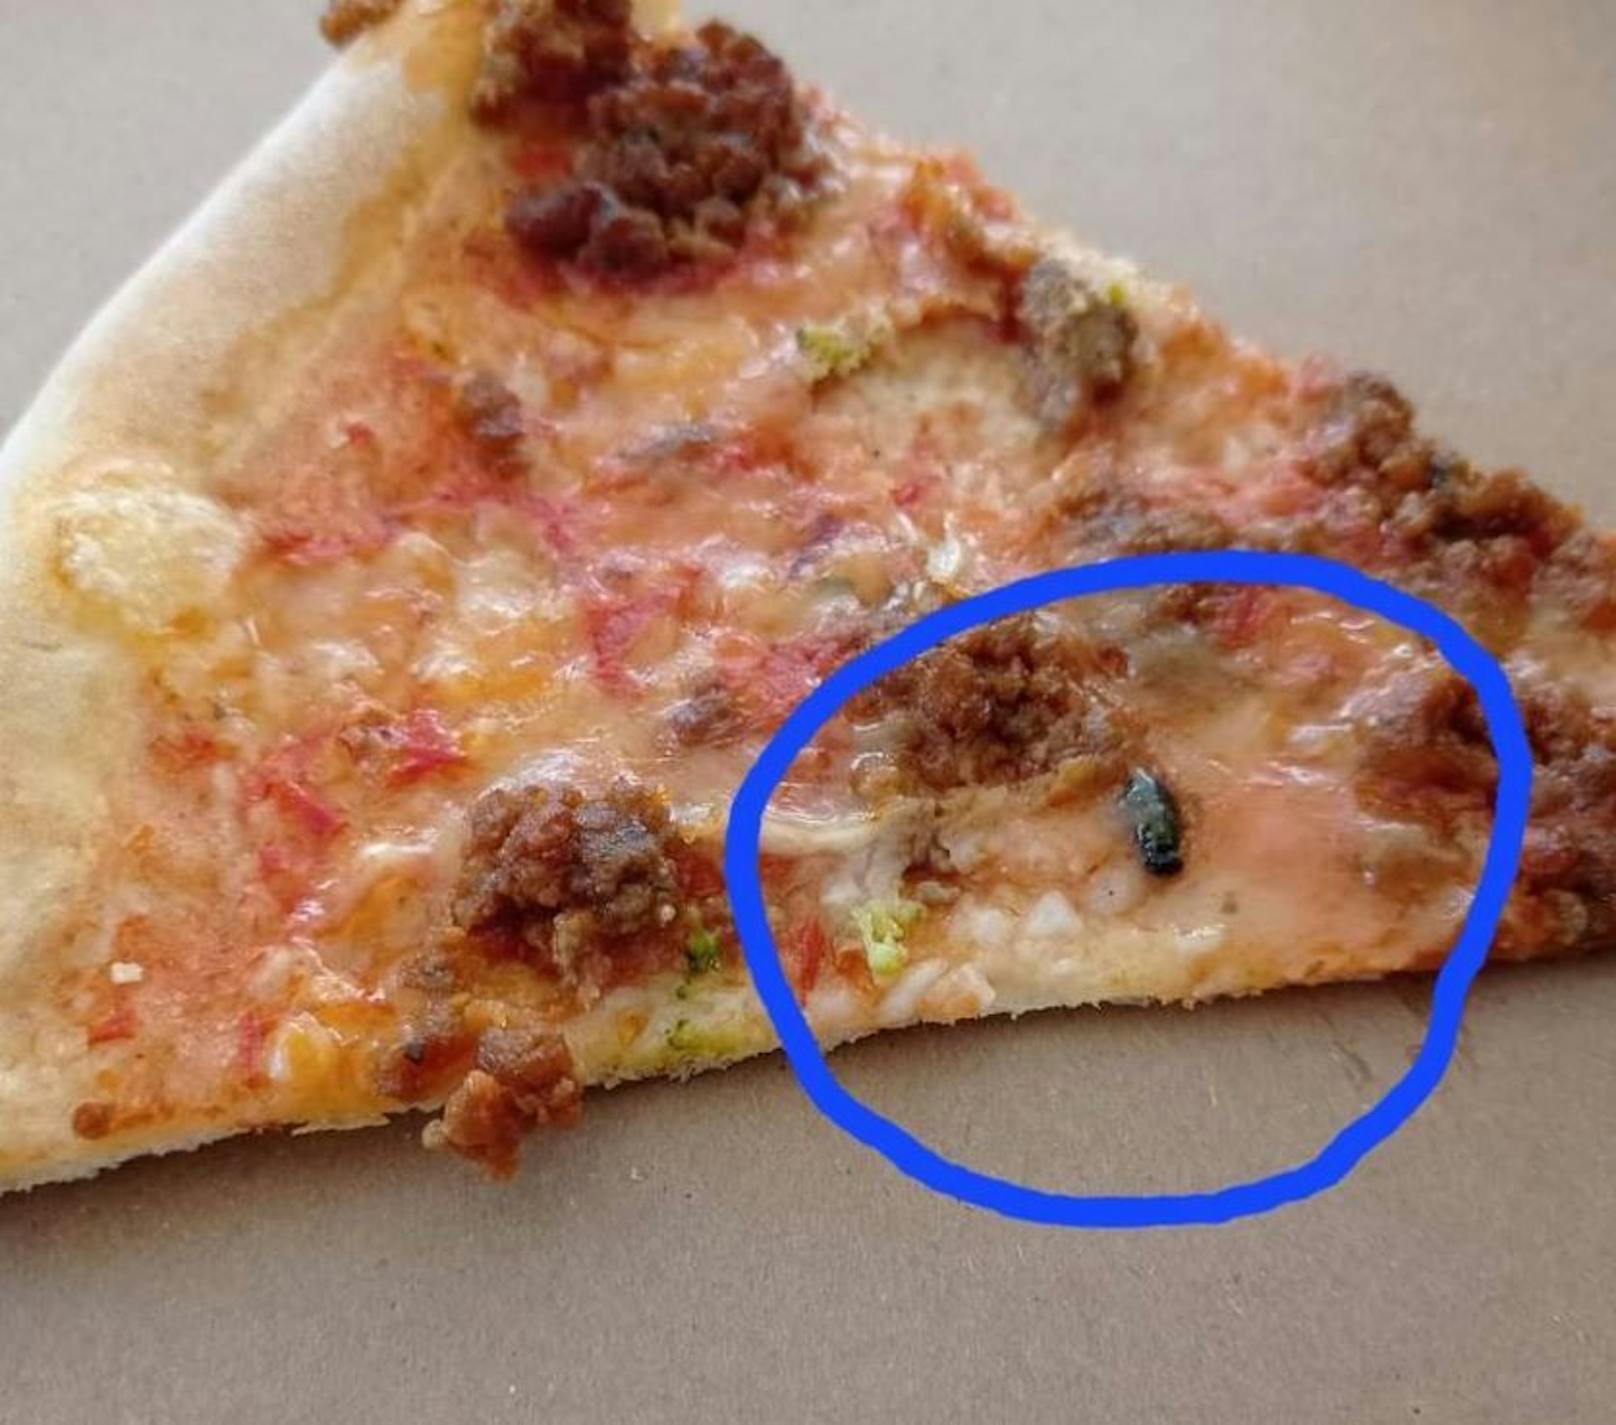 Die Frau fand eine überbackene Fliege auf ihrer Pizza.